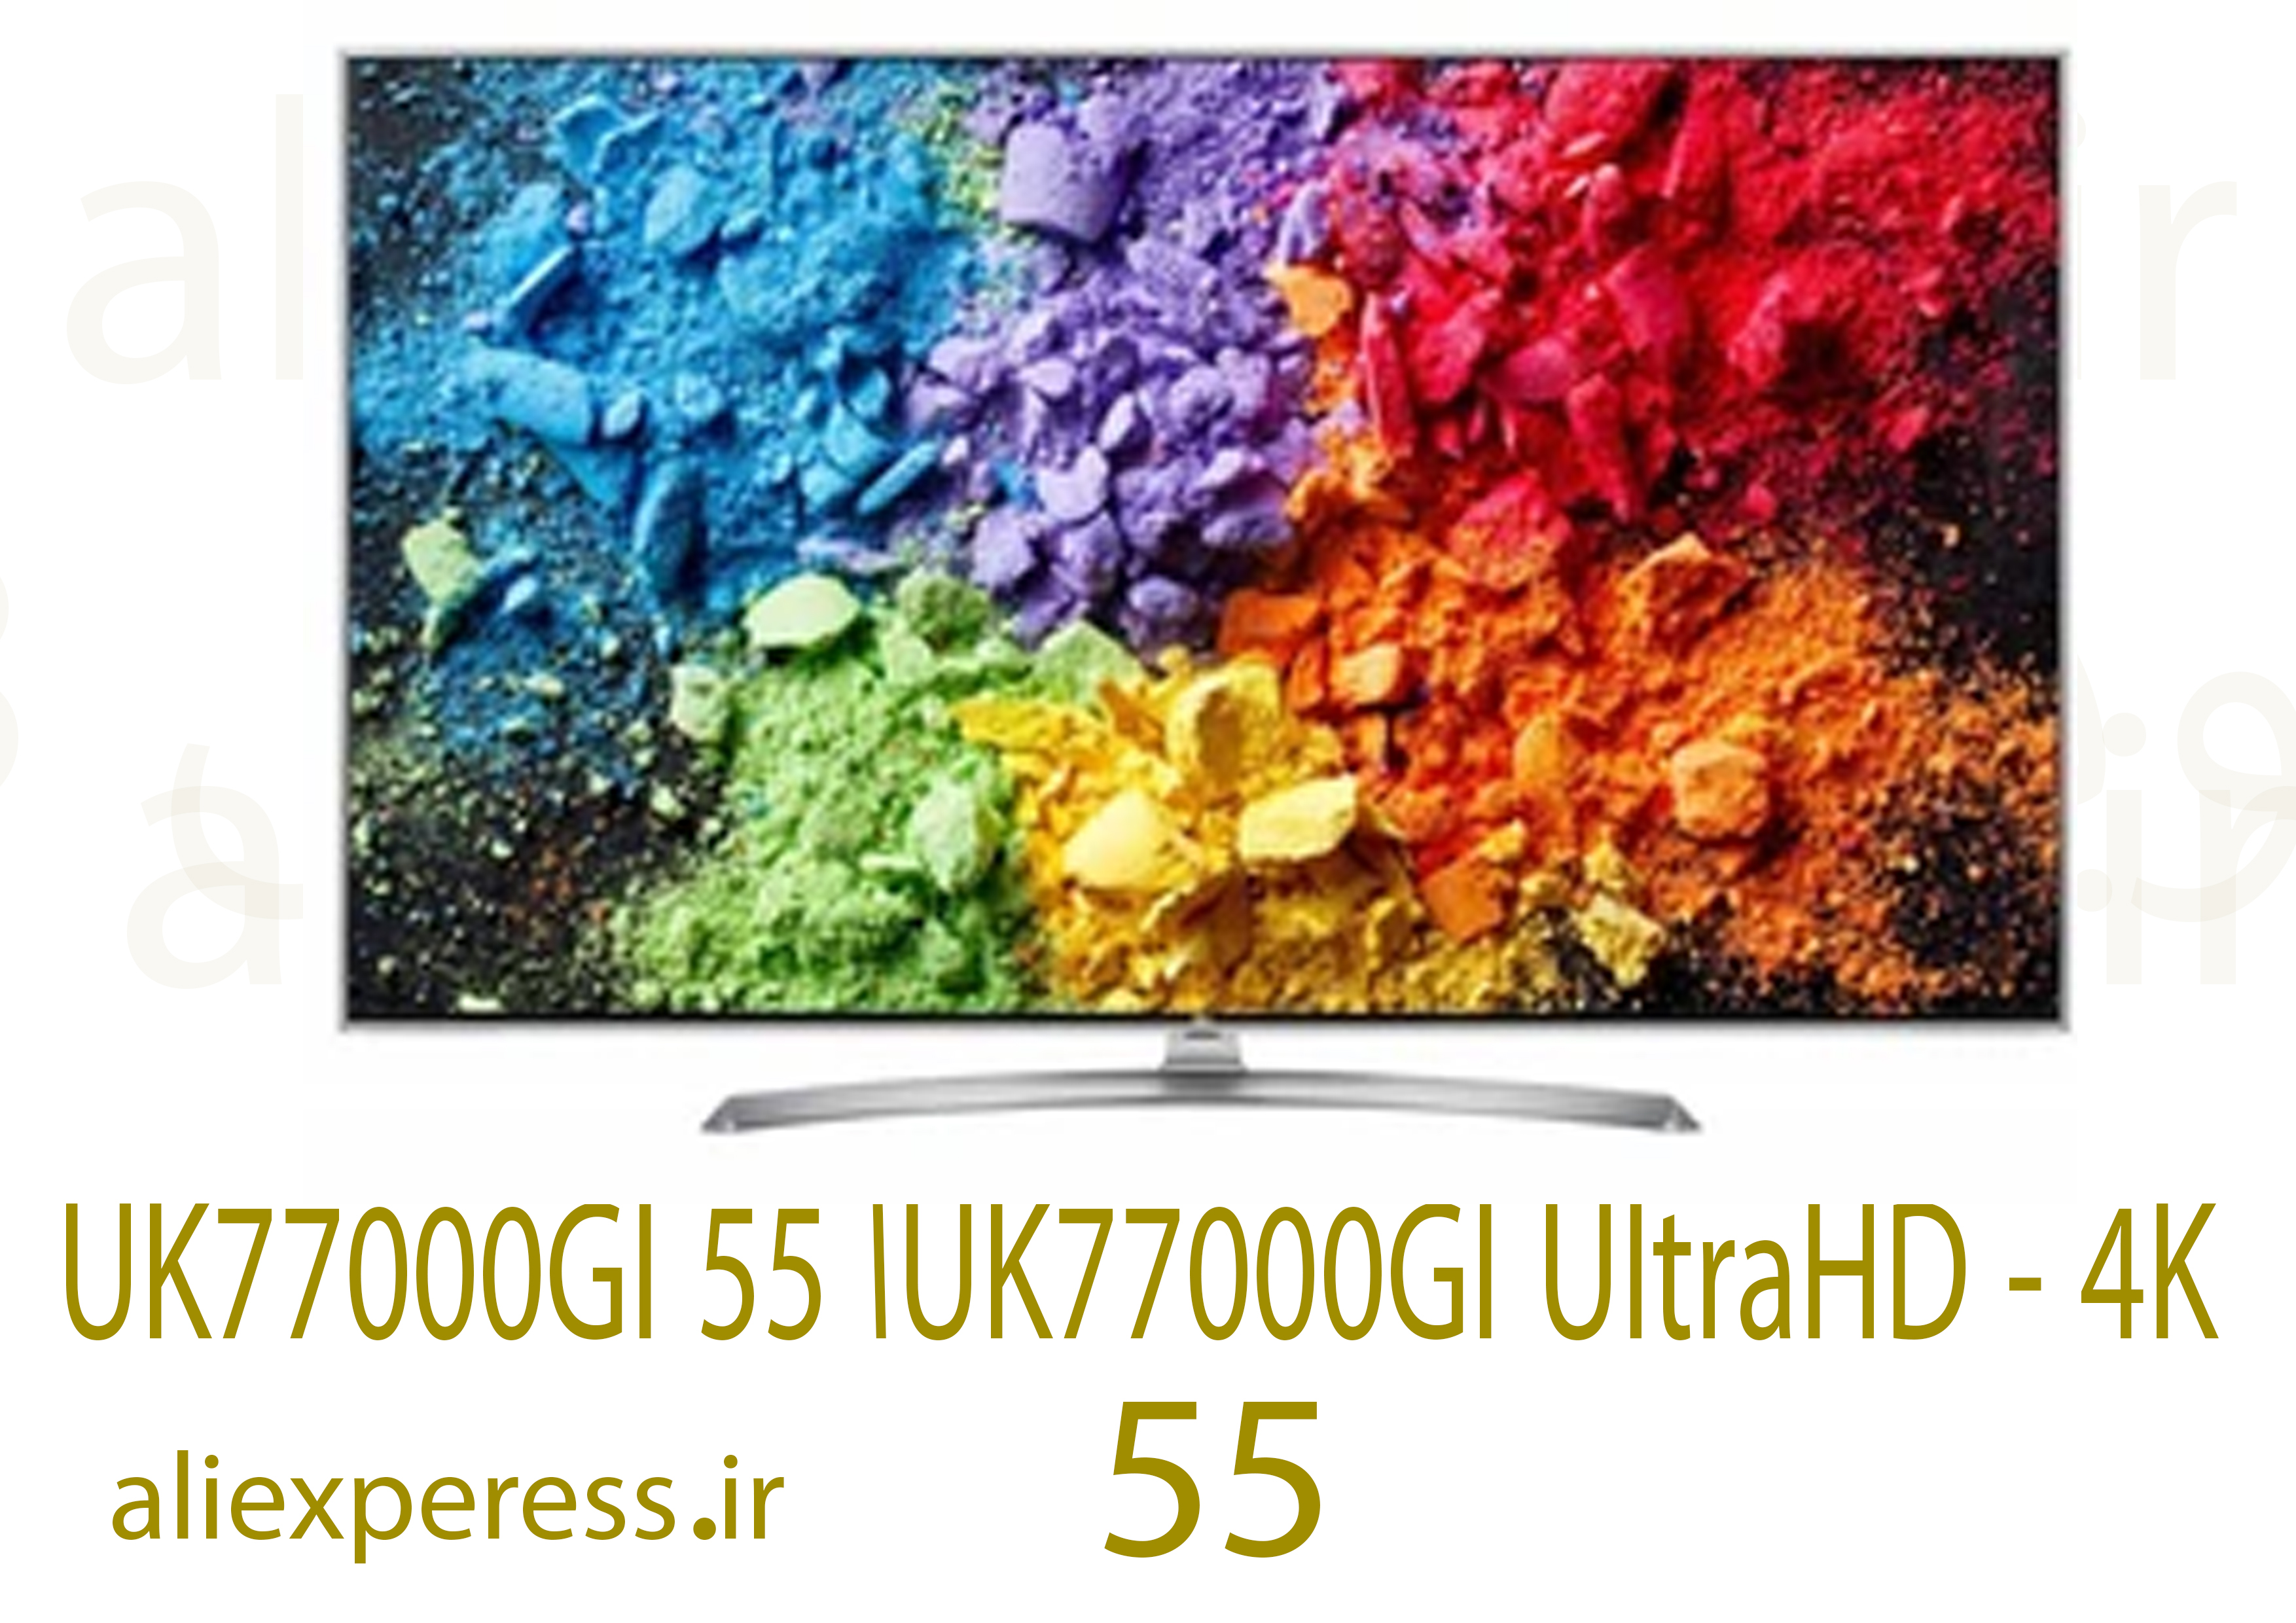 تلویزیون ال جی مدل 55UK77000GI ا 55UK77000GI UltraHD - 4K